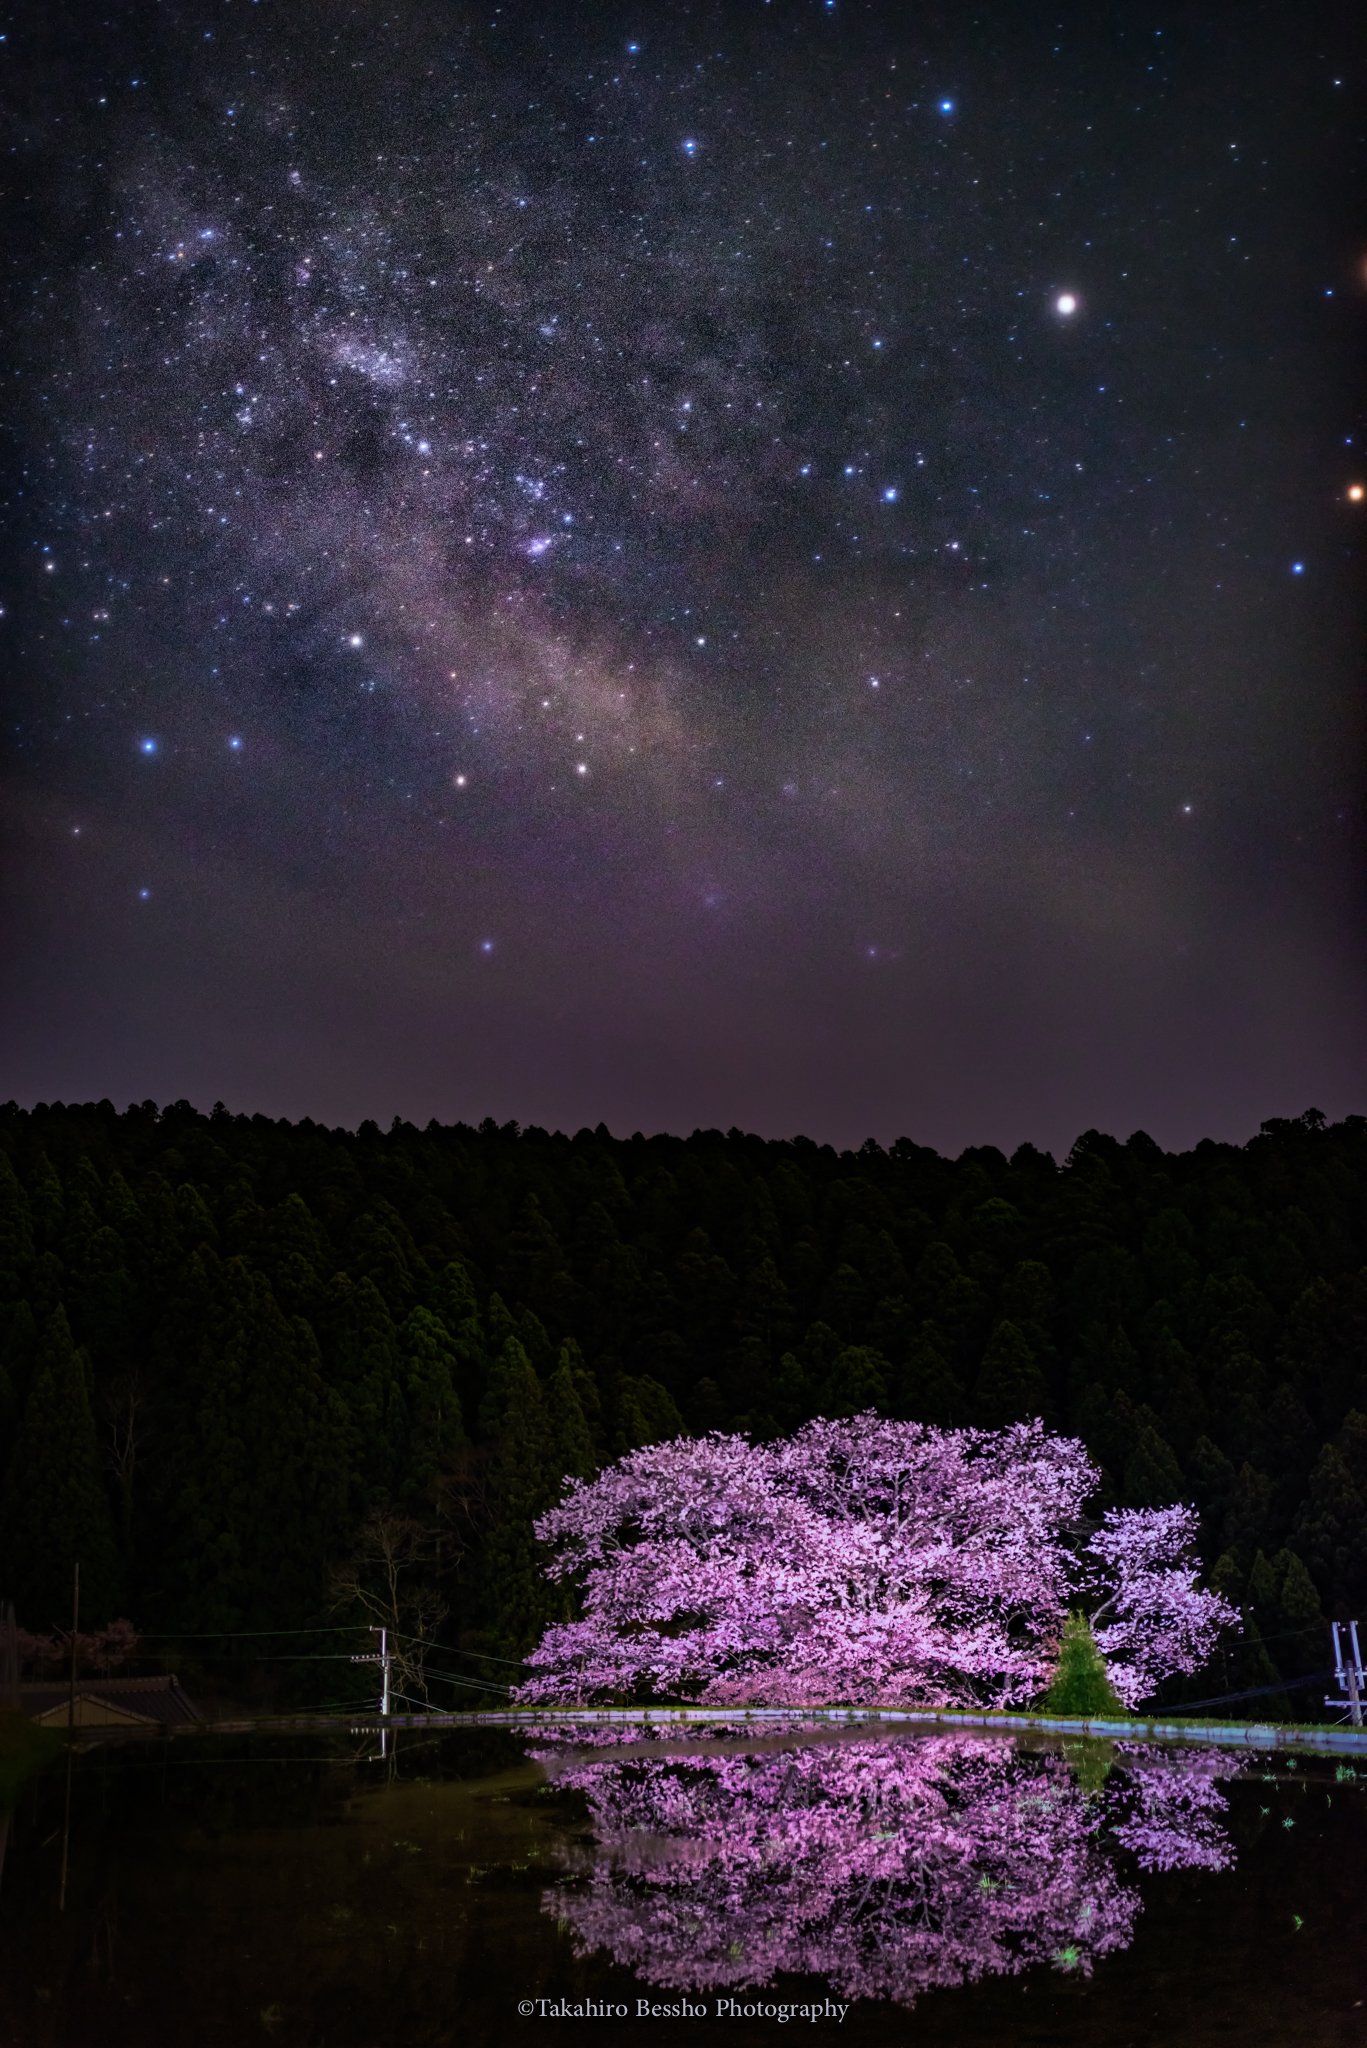 樱花星空 自然风景图片